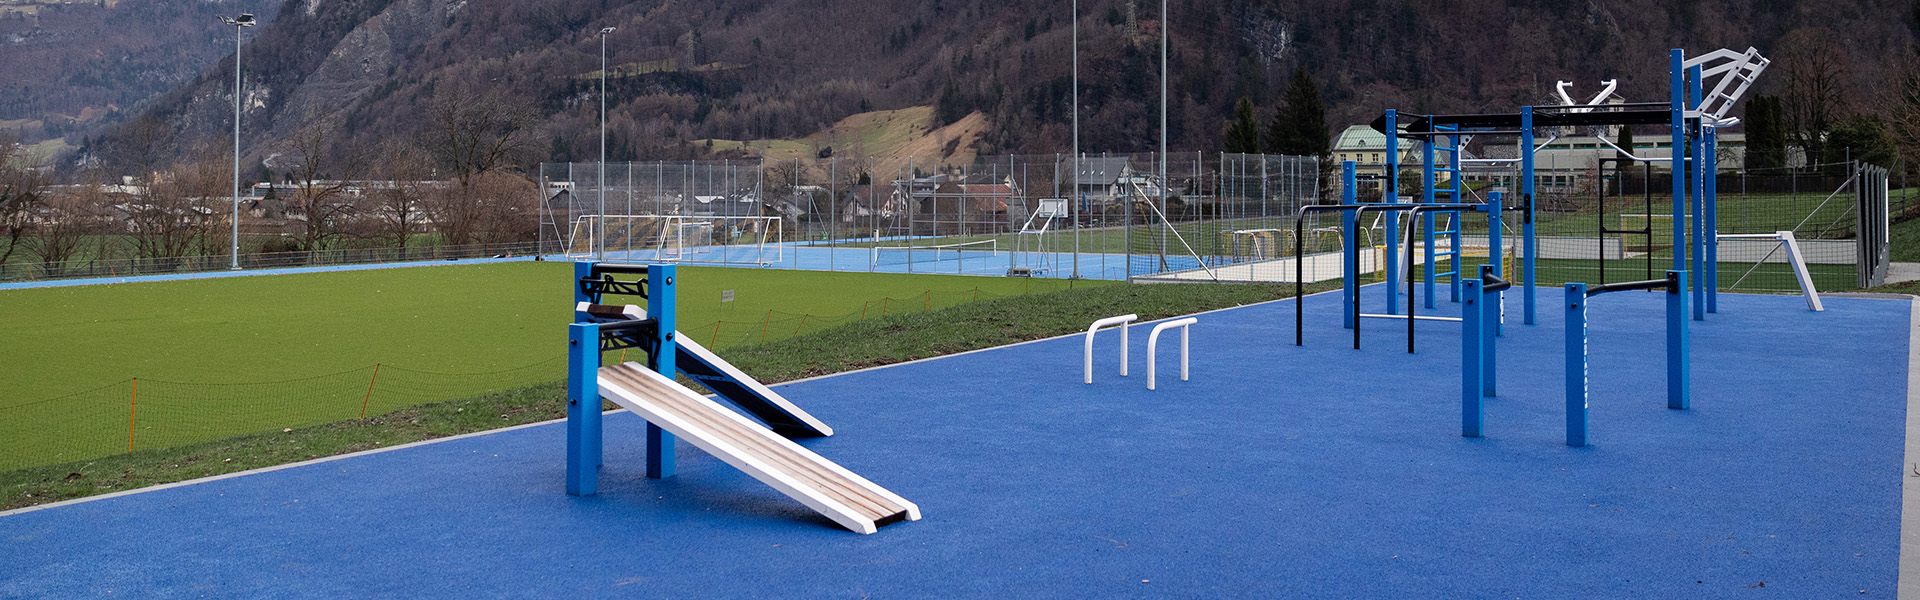 Regenwassermanagement auf Sportplätzen - Technische Filter im Fokus